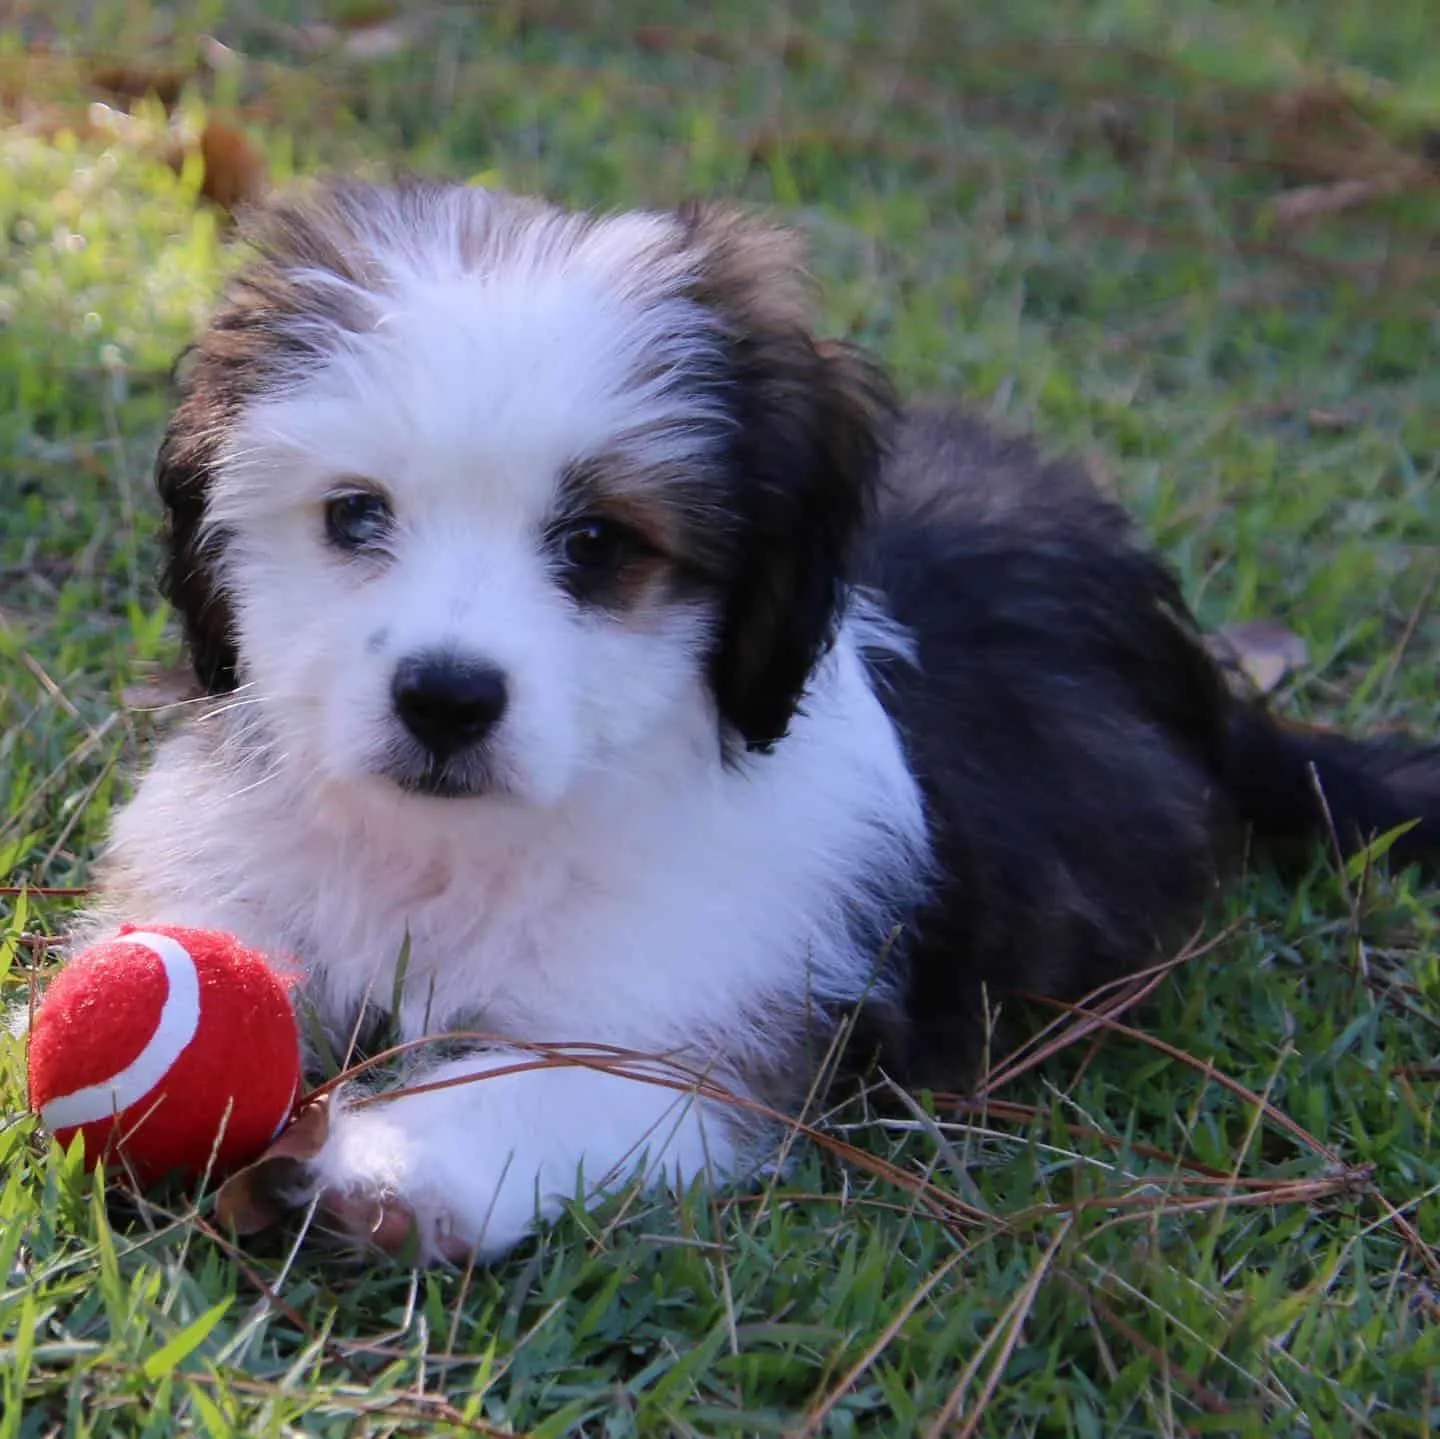 Aussie Tzu dog with ball on the grass